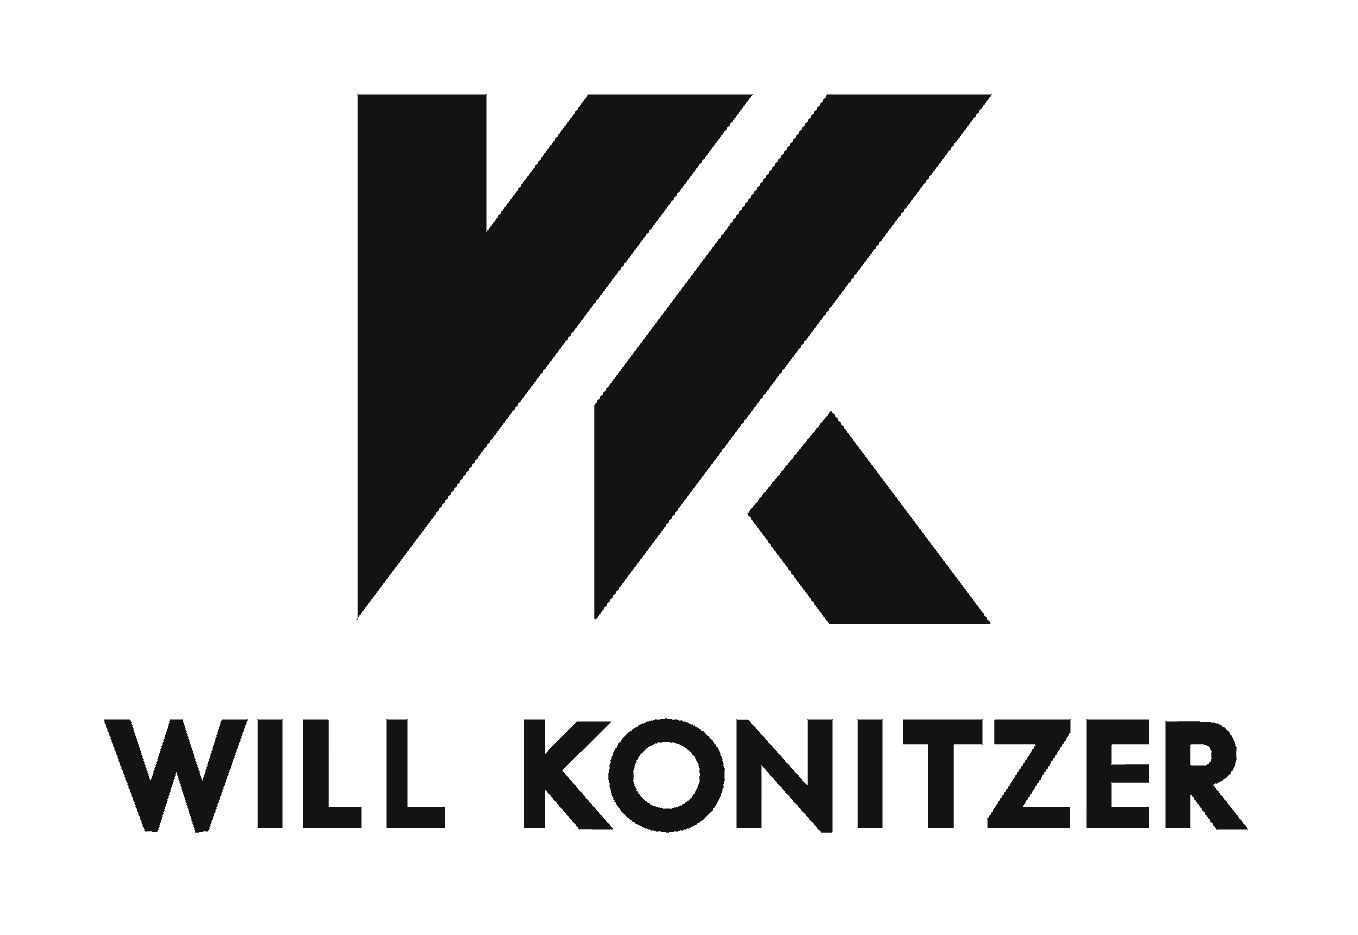 Will Konitzer